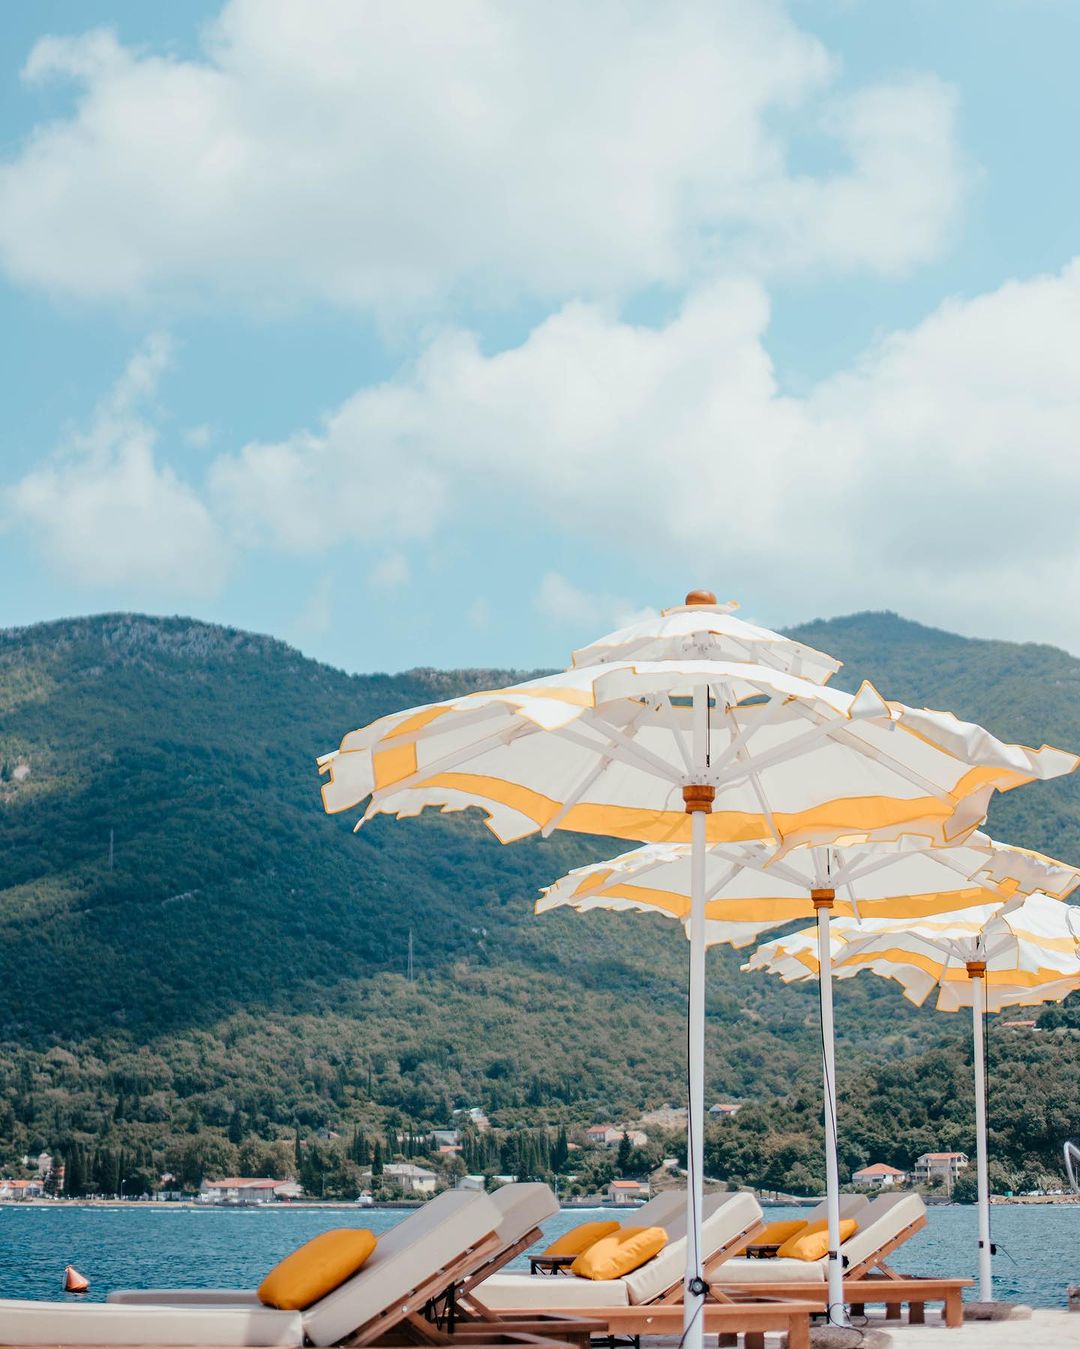 Beach bar inspiriran limunima u kojem ćete se osjećati kao na Siciliji